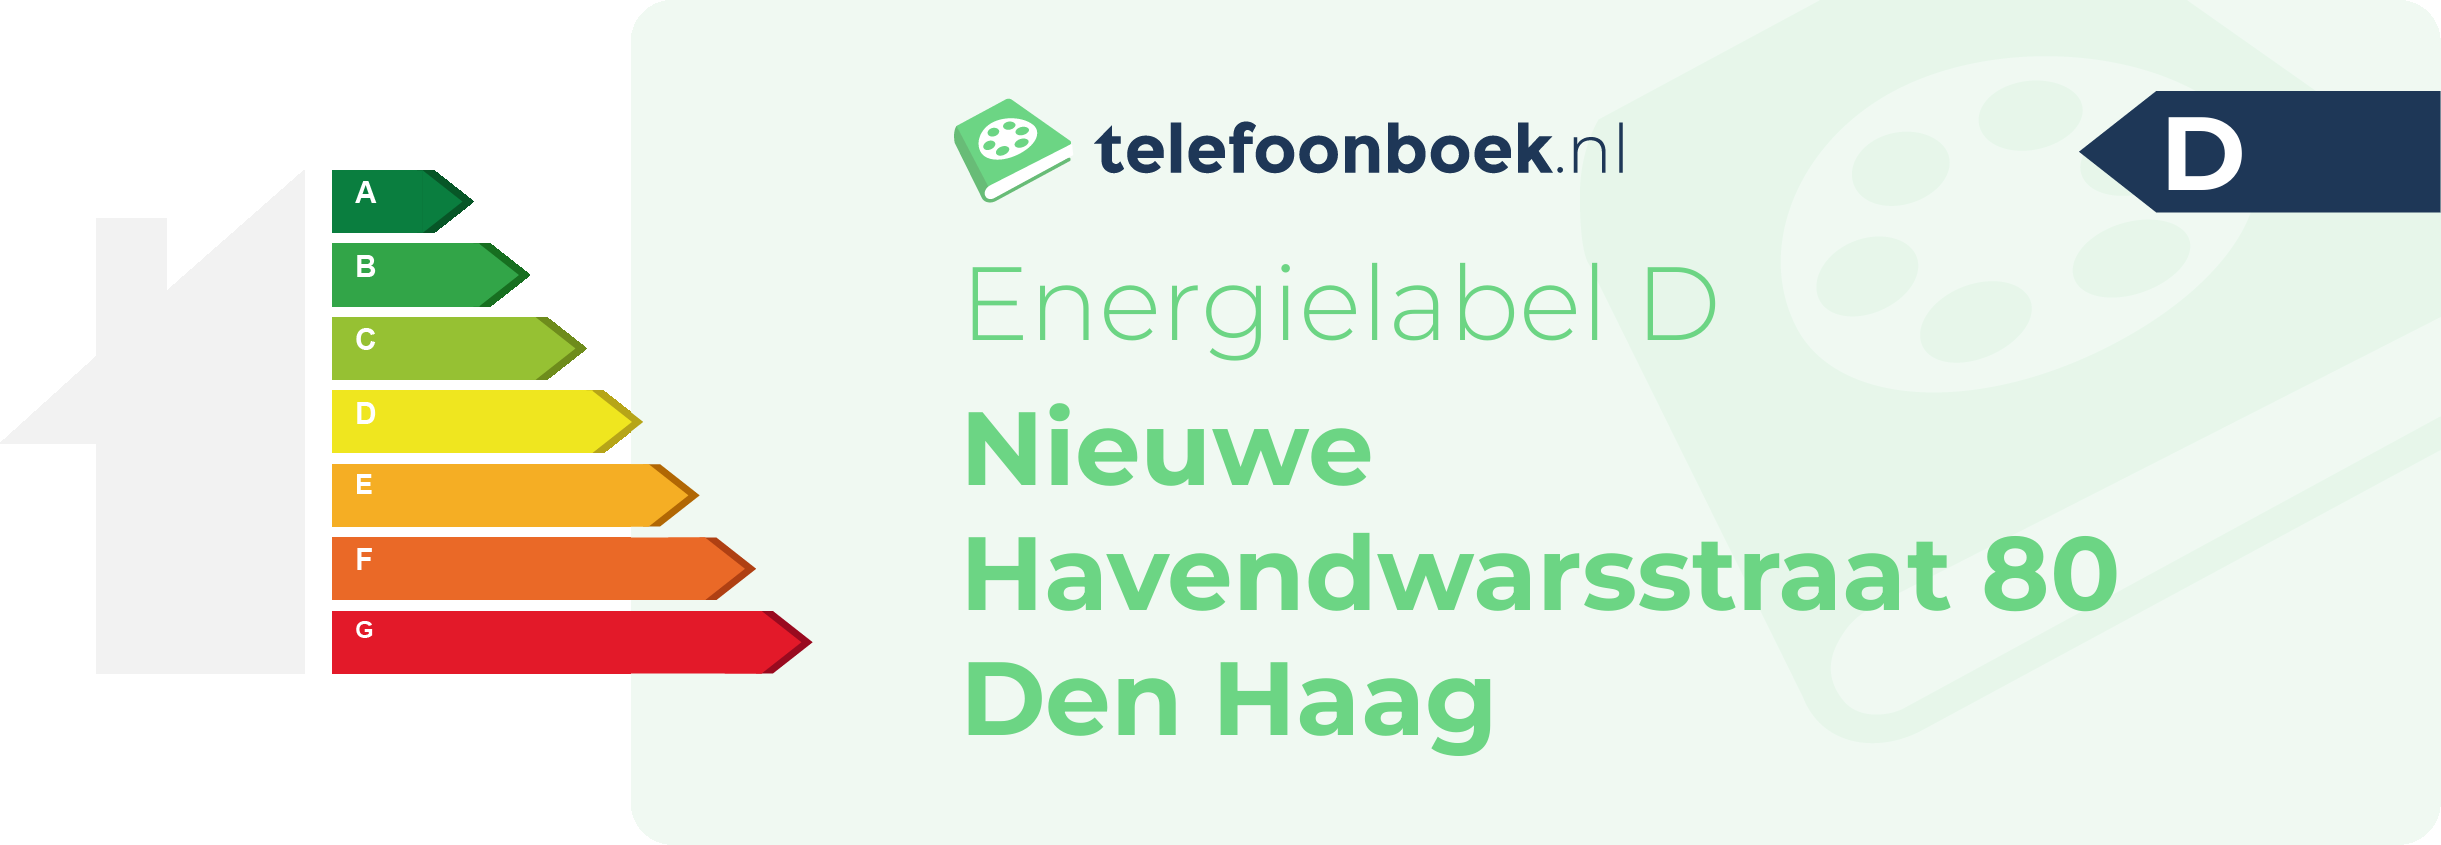 Energielabel Nieuwe Havendwarsstraat 80 Den Haag